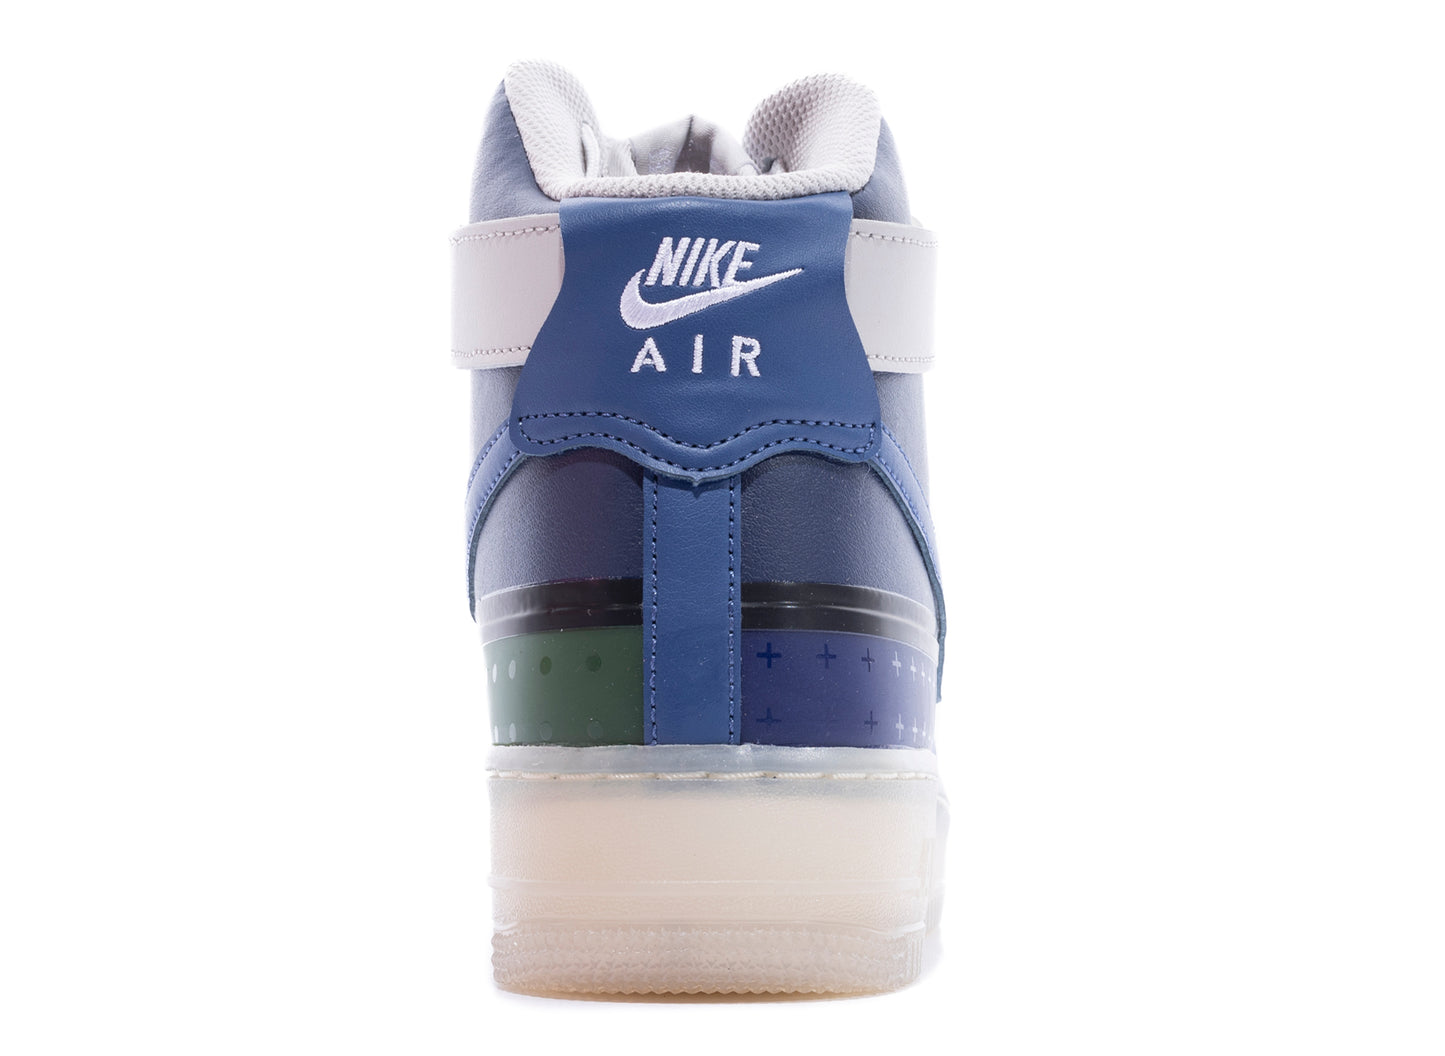 Nike Air Force 1 High '07 Premium